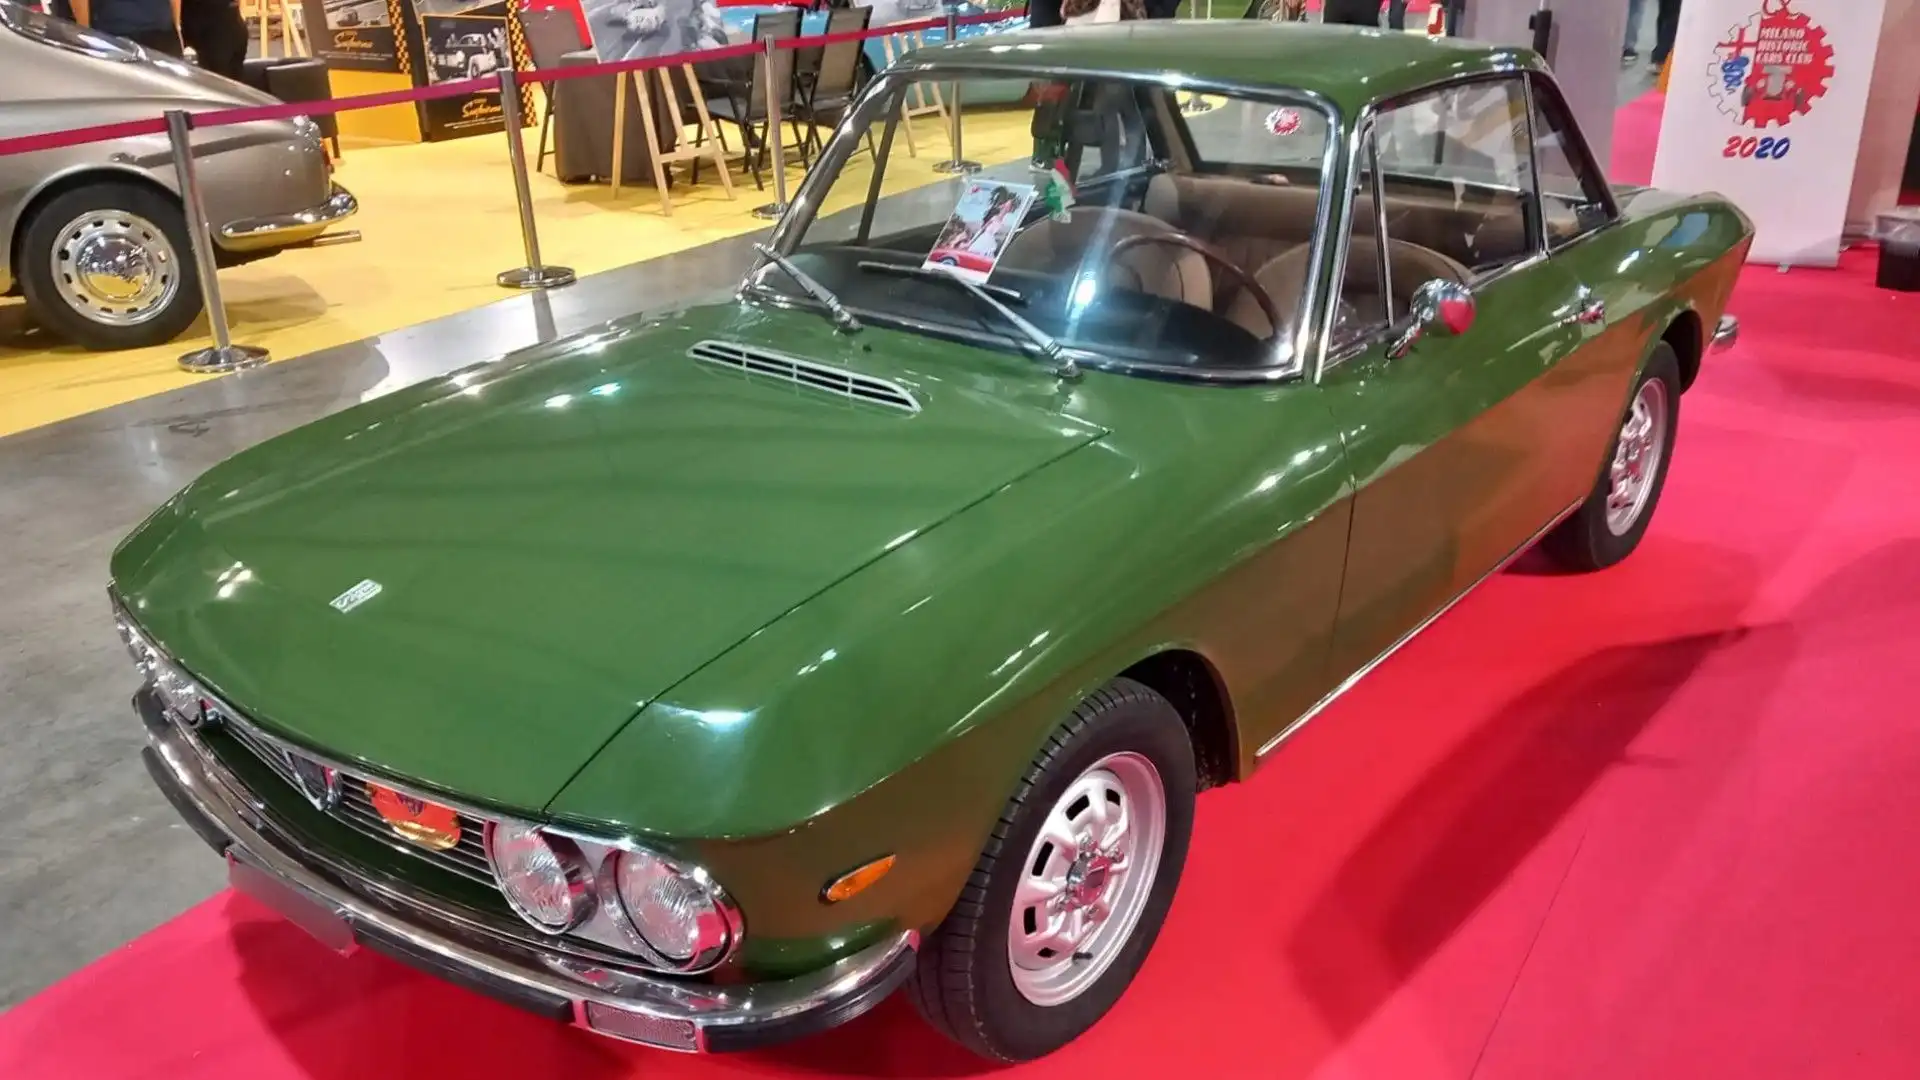 La Lancia Fulvia è stata prodotta a partire dal 1965 nella versione berlina